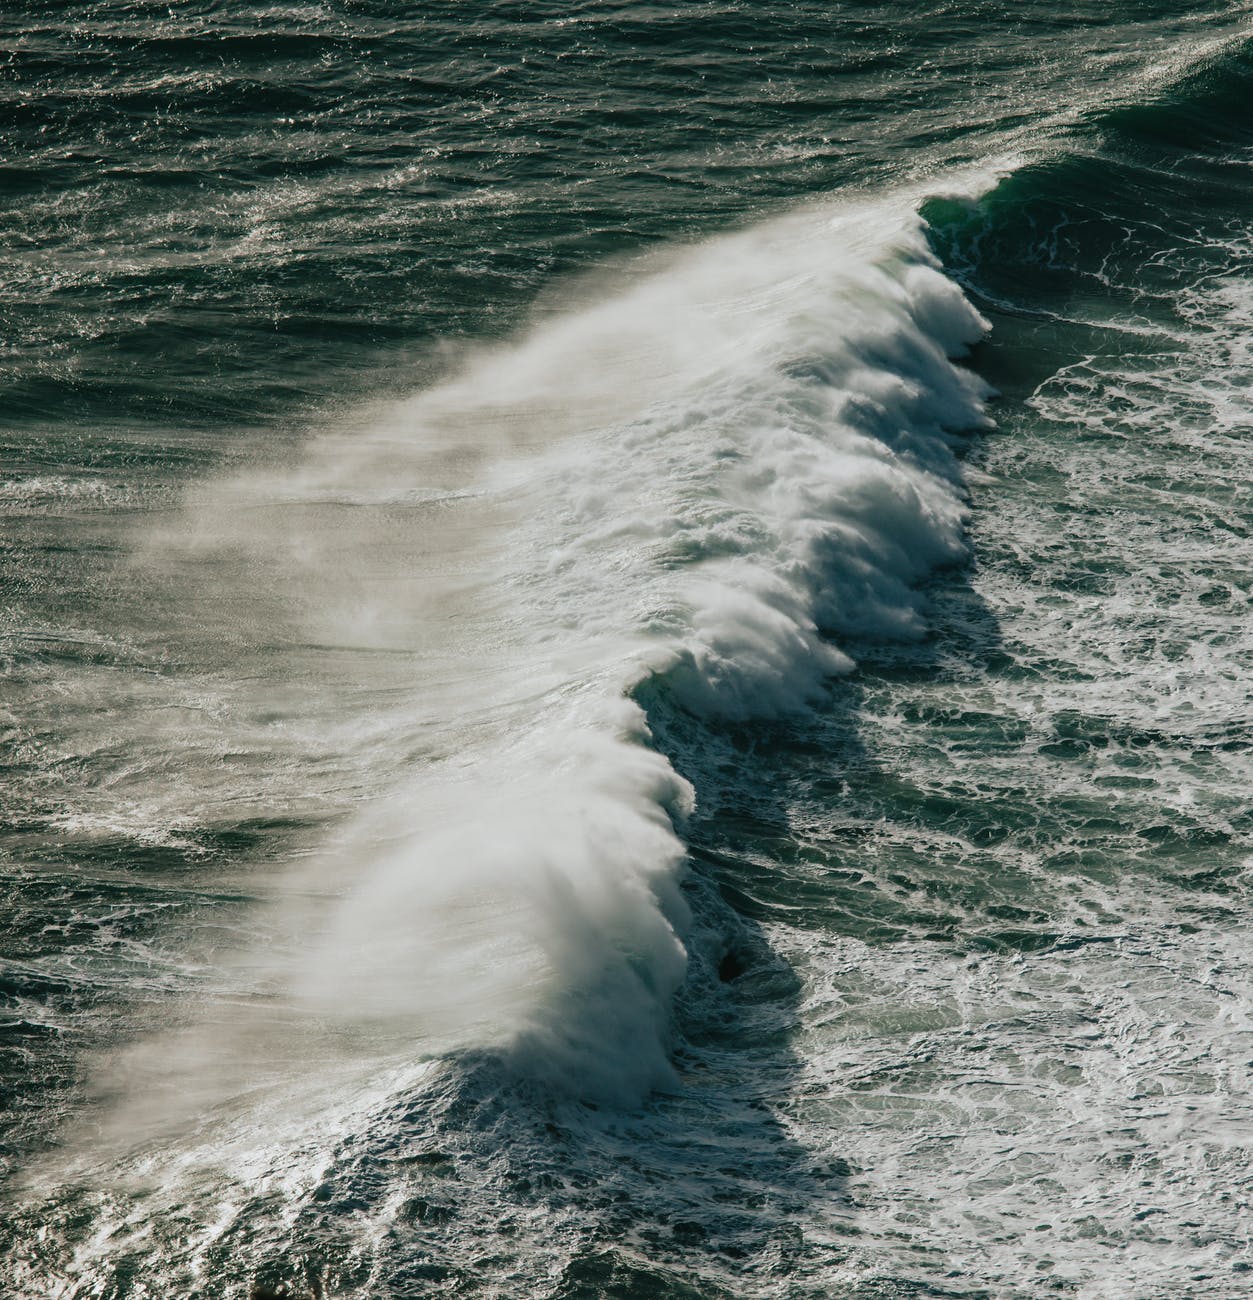 ocean waves crashing on shore